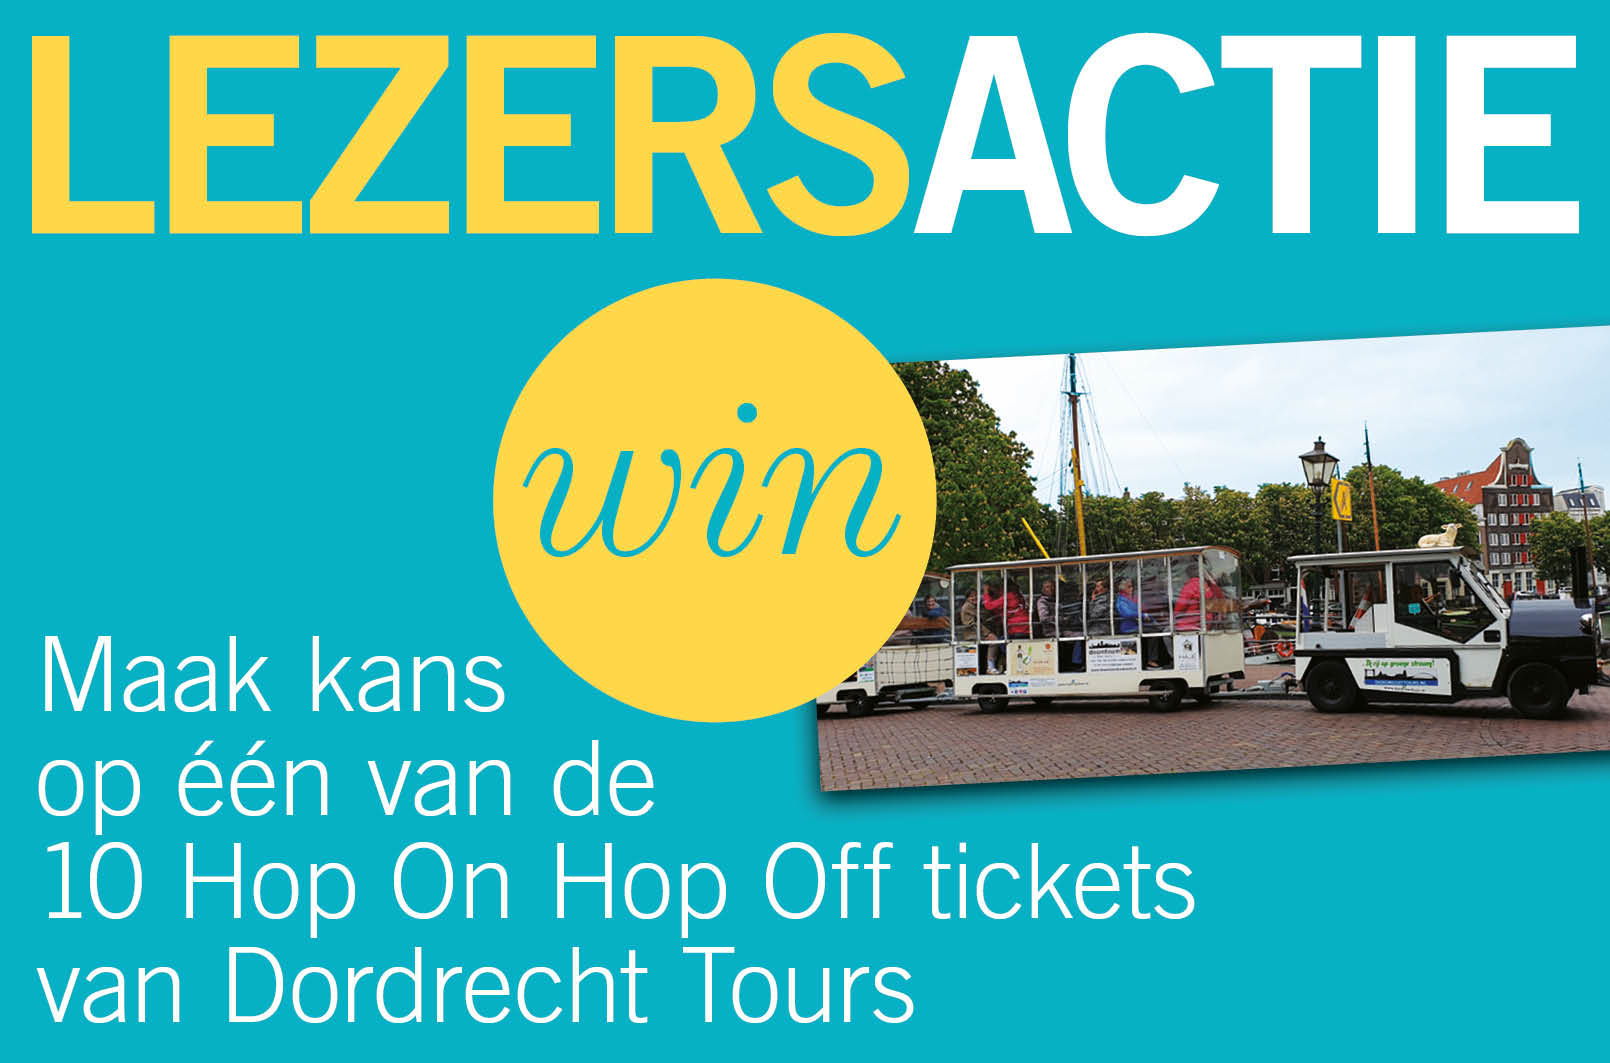 Maak kans op één van de 10 Hop On Hop Off tickets van Dordrecht Tours.